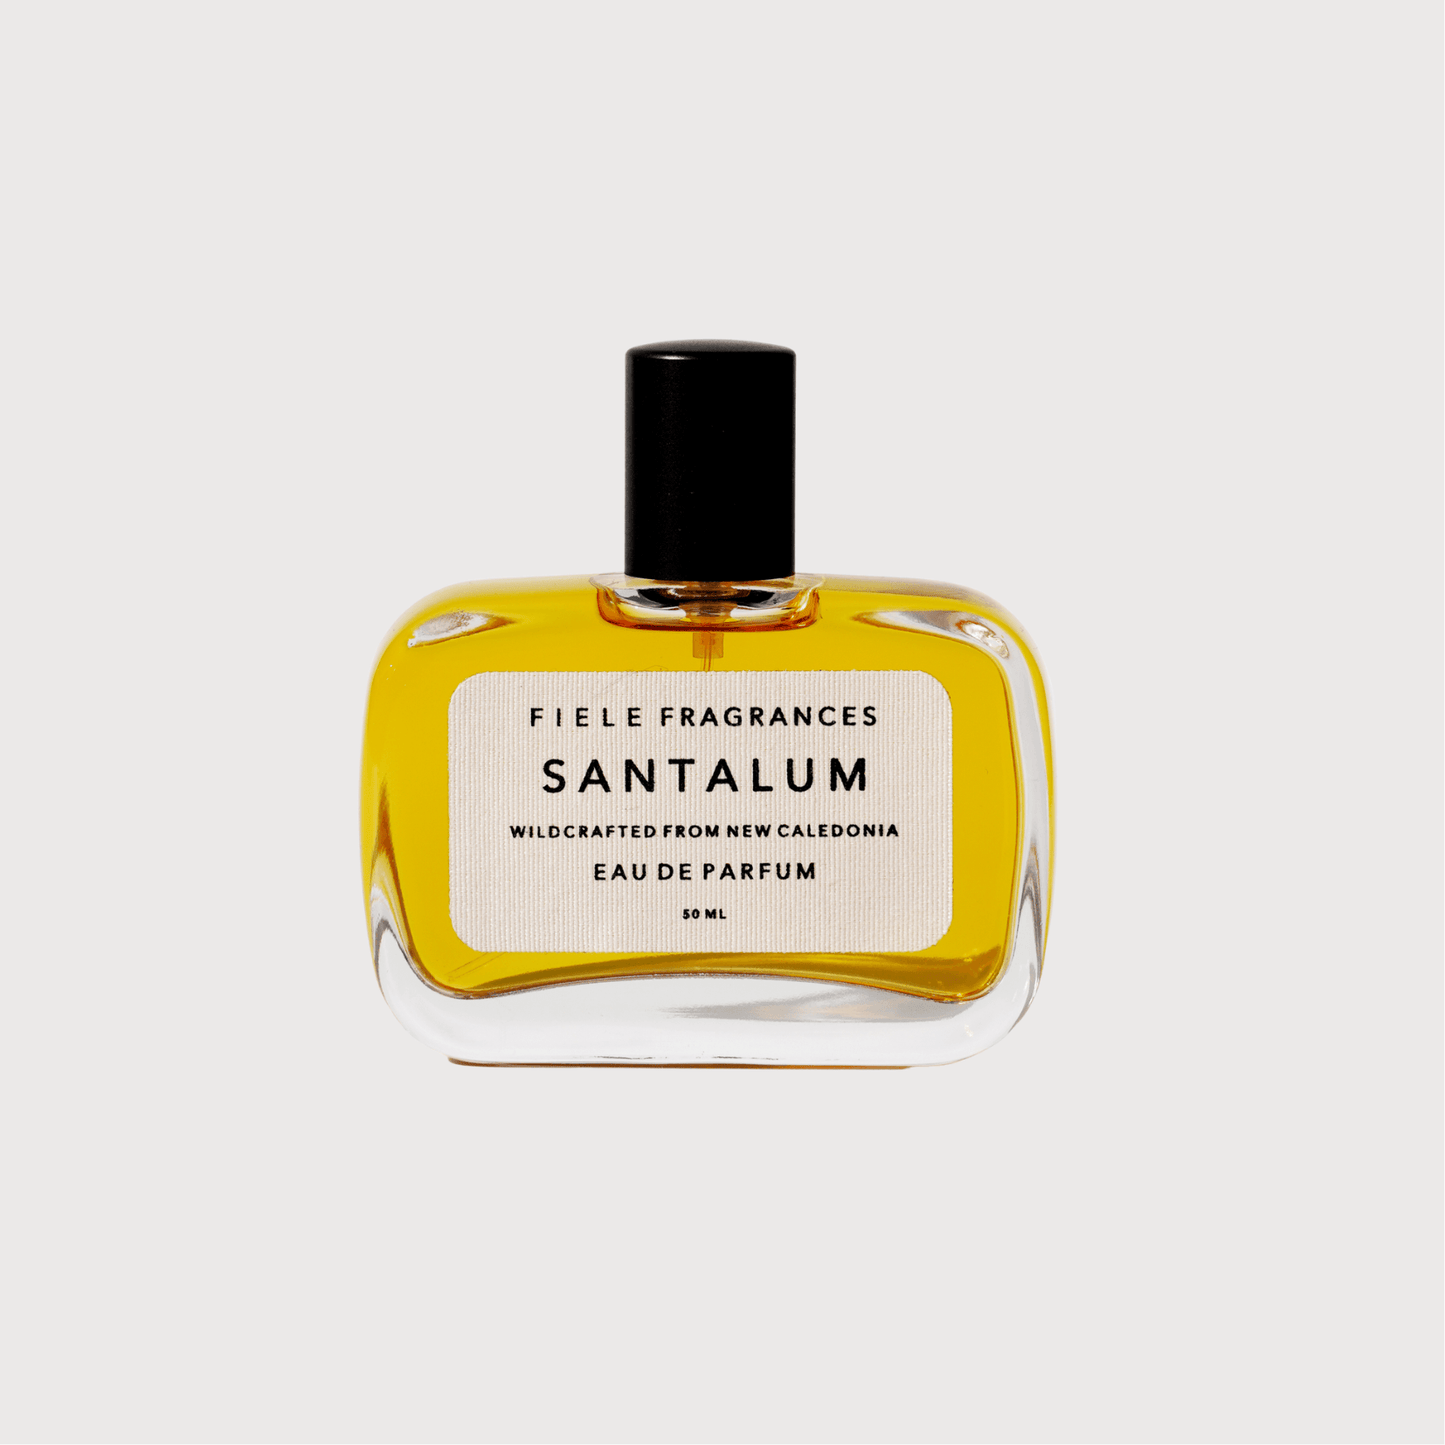 Santalum eau de parfum by Fiele Frangrances - Haven